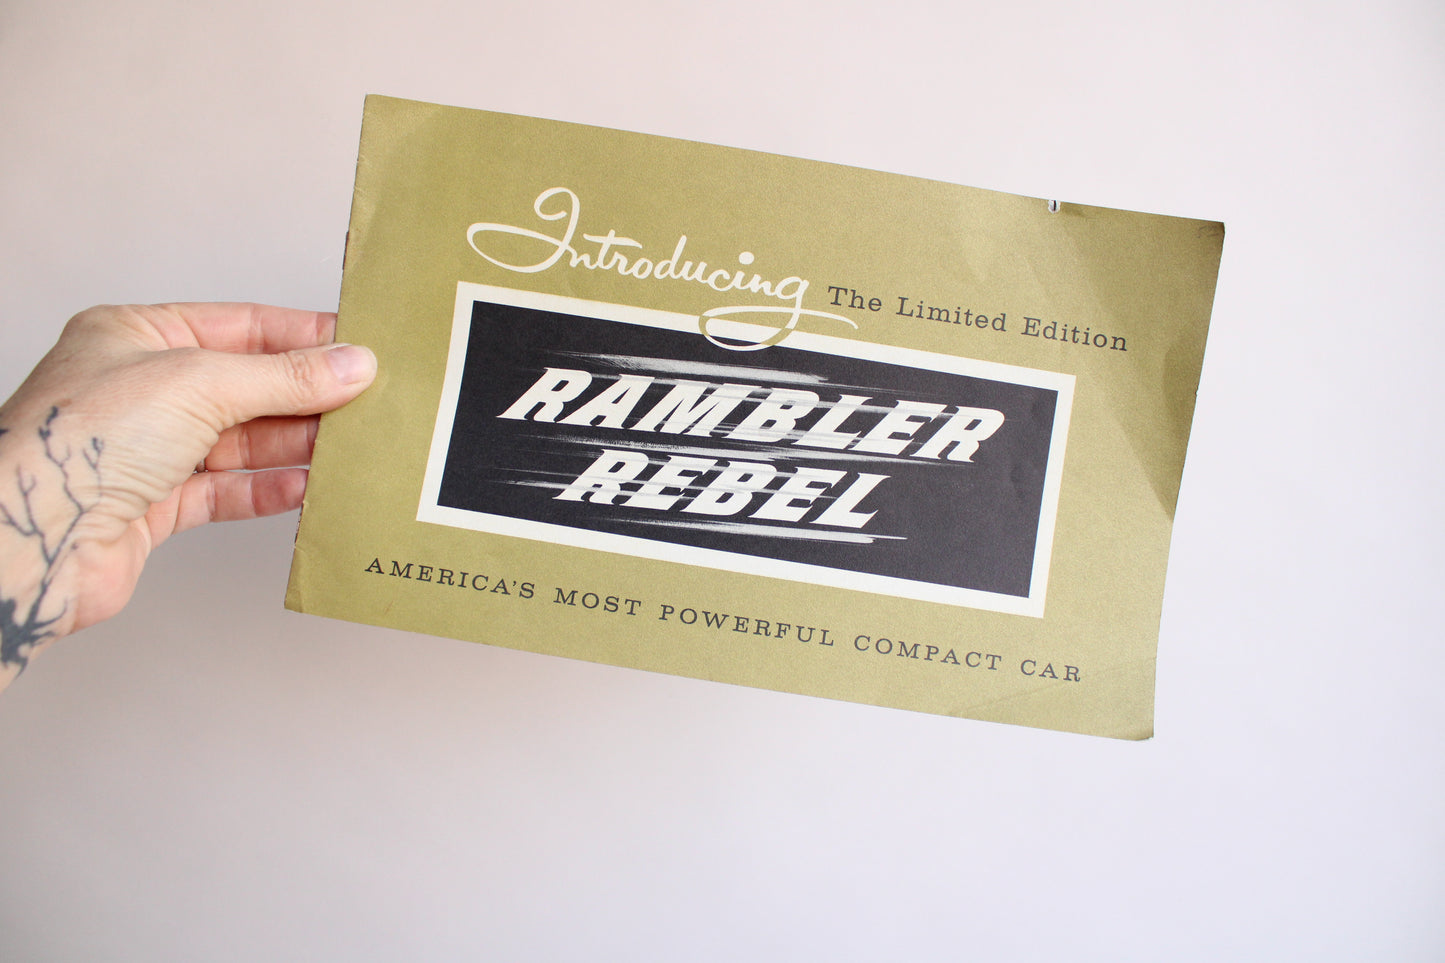 Vintage 1950s Rambler Rebele Auto Dealer Brochure